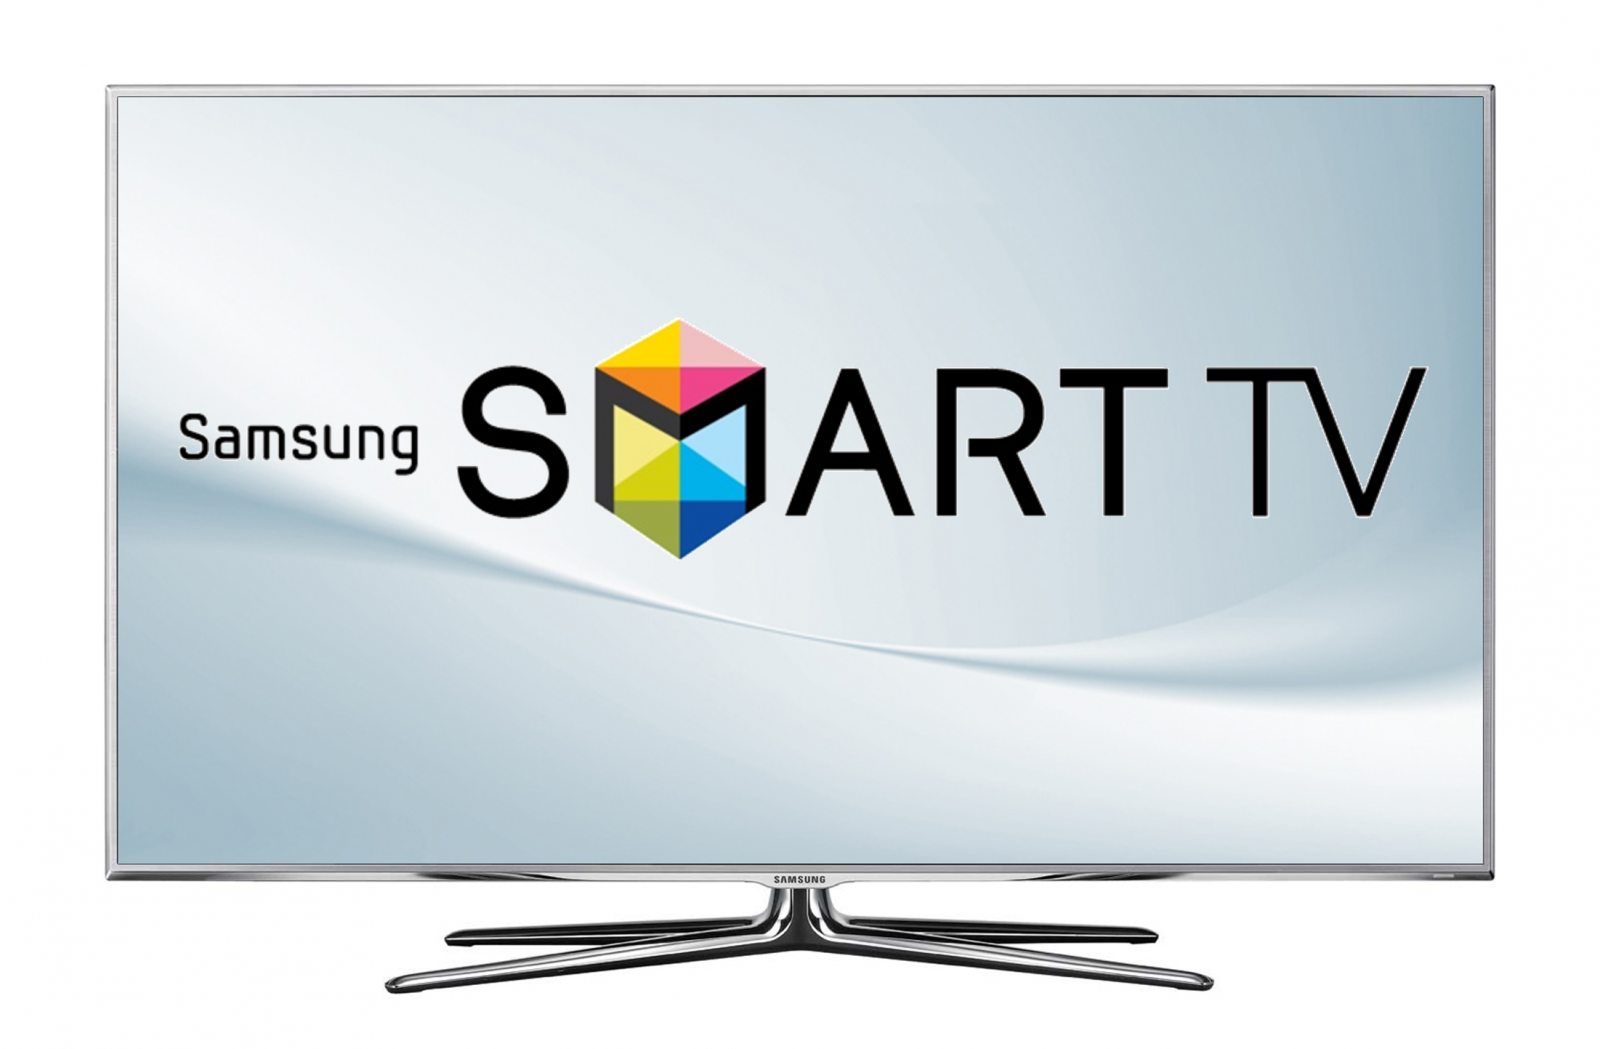 Trải nghiệm thú vị với Smart Tivi Samsung với hàng nghìn ứng dụng giải trí đa dạng và tốc độ xử lý nhanh. Chỉ cần vài thao tác đơn giản để kết nối với internet, bạn sẽ được tận hưởng không gian giải trí tuyệt vời ngay tại nhà.